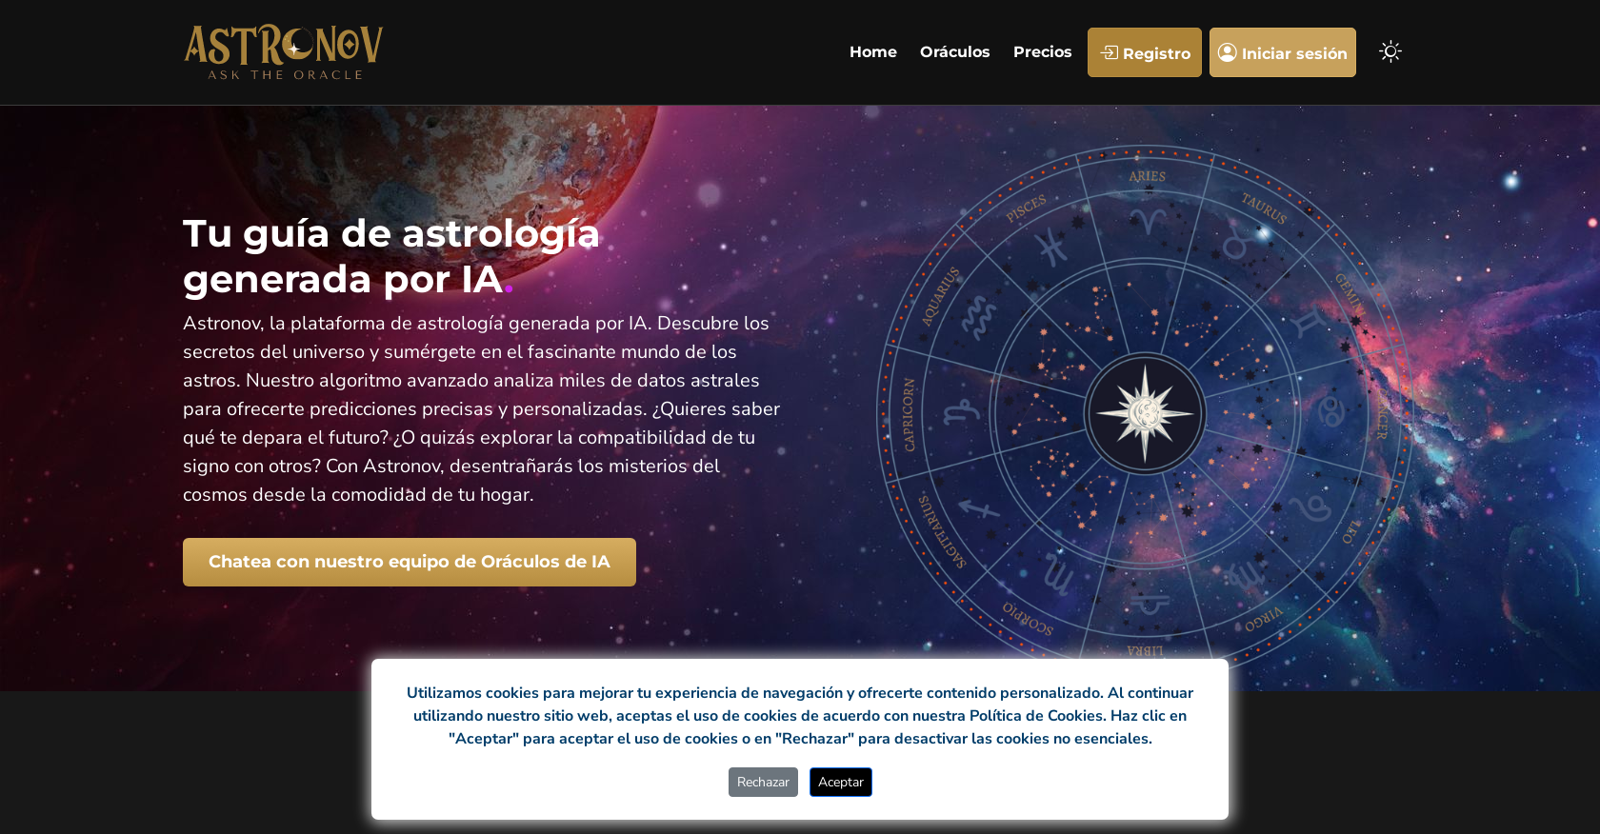 Astronov website